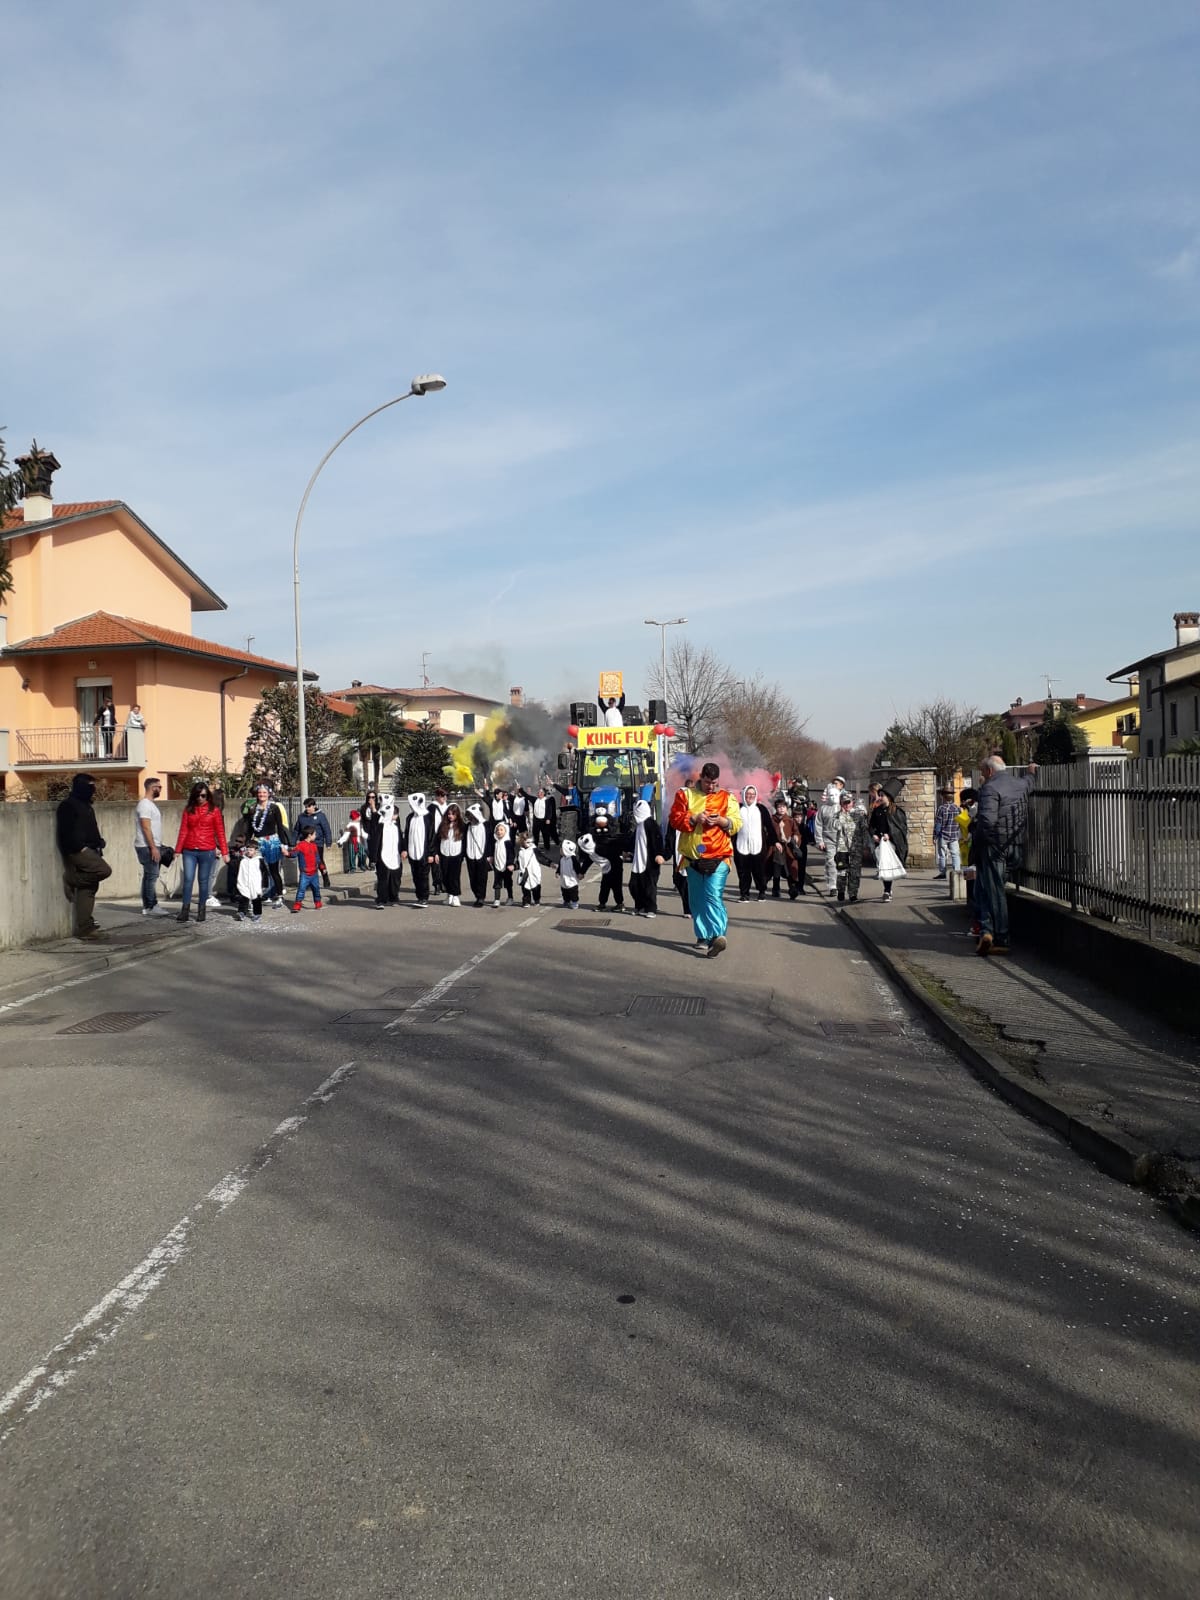 Carnevale 2019 sfilata dei carri Treviglio, Vidalengo e Caravaggio